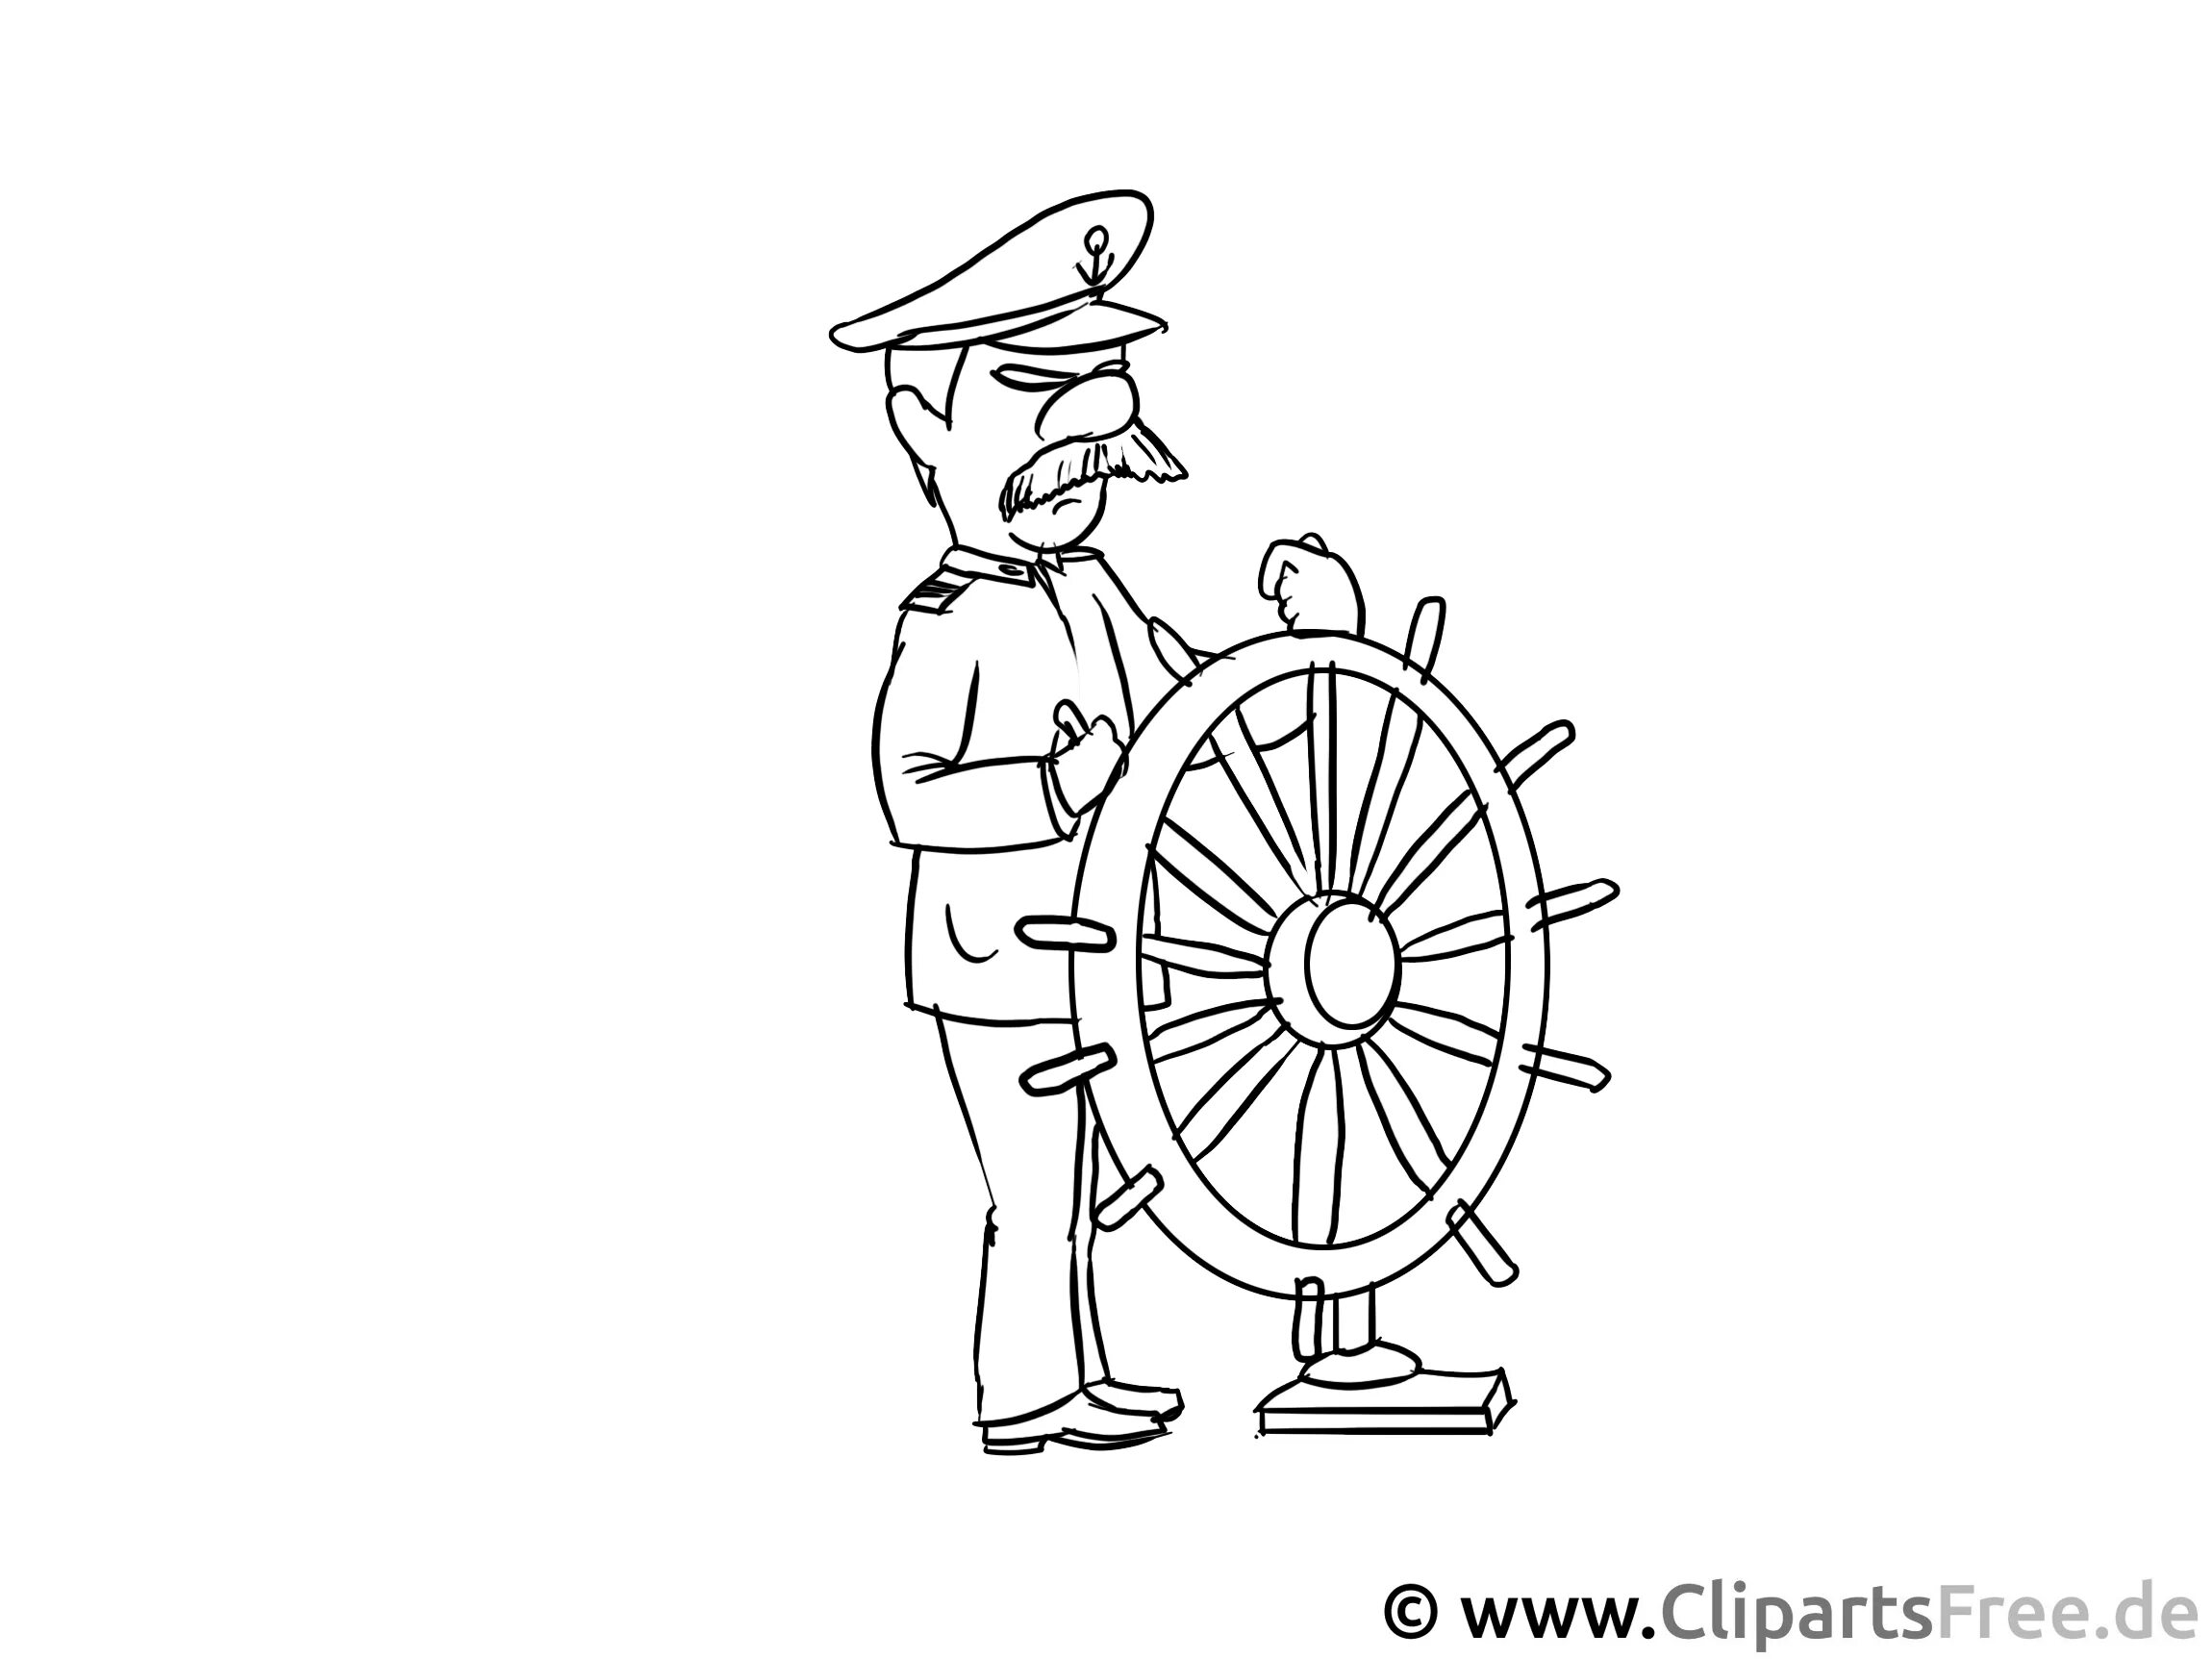 Ship captain #10